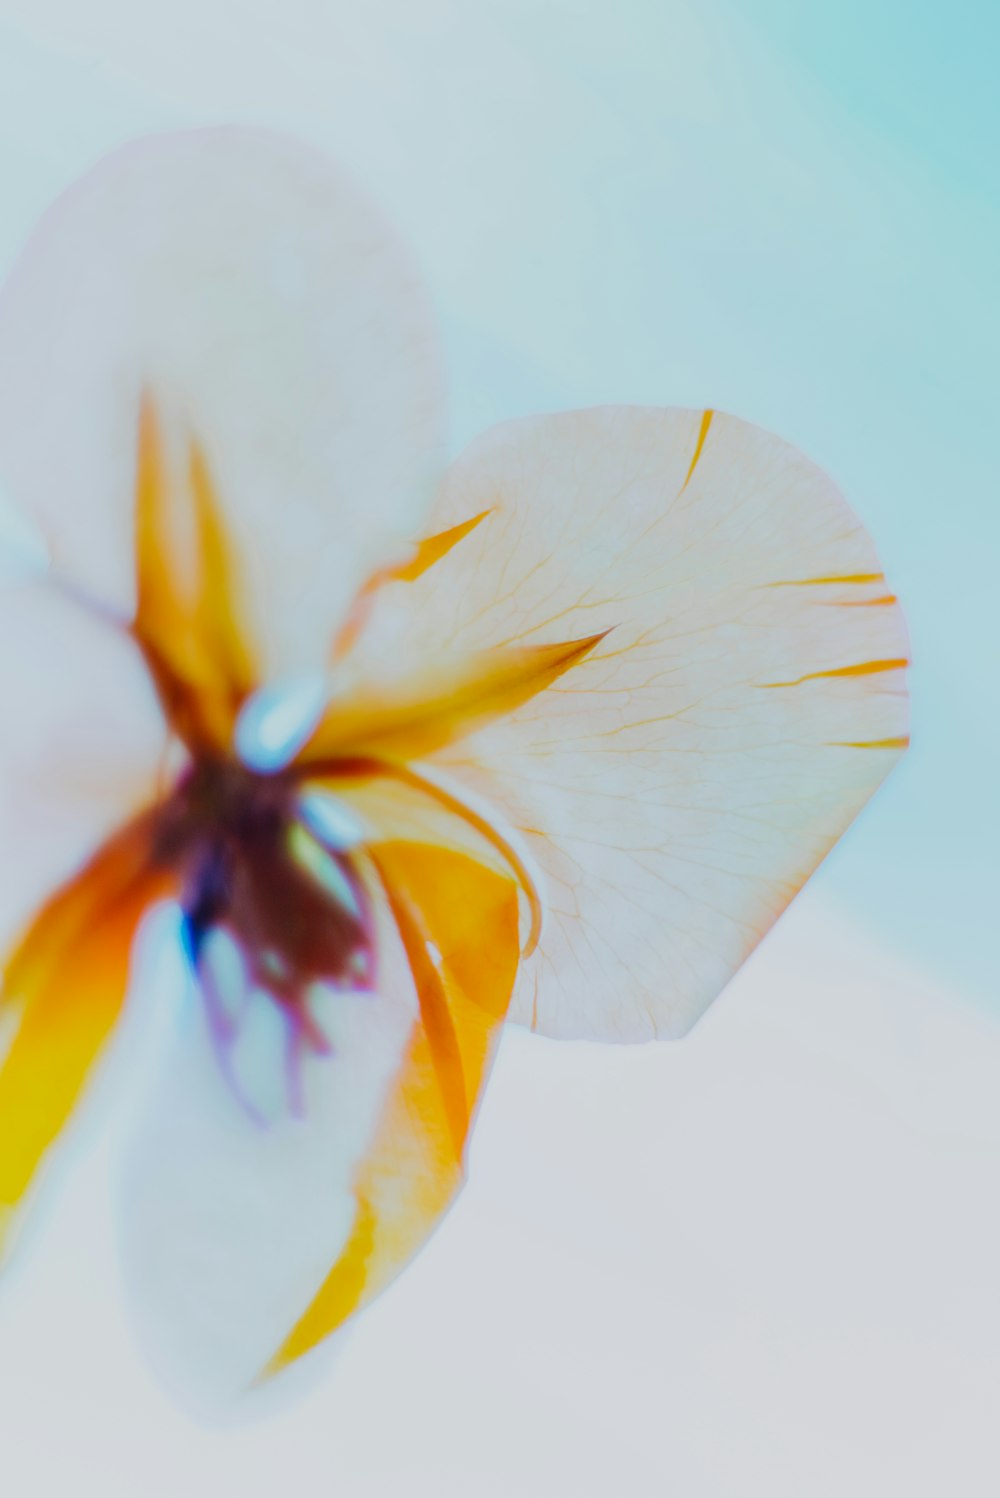 fiore bianco e giallo nella fotografia ravvicinata